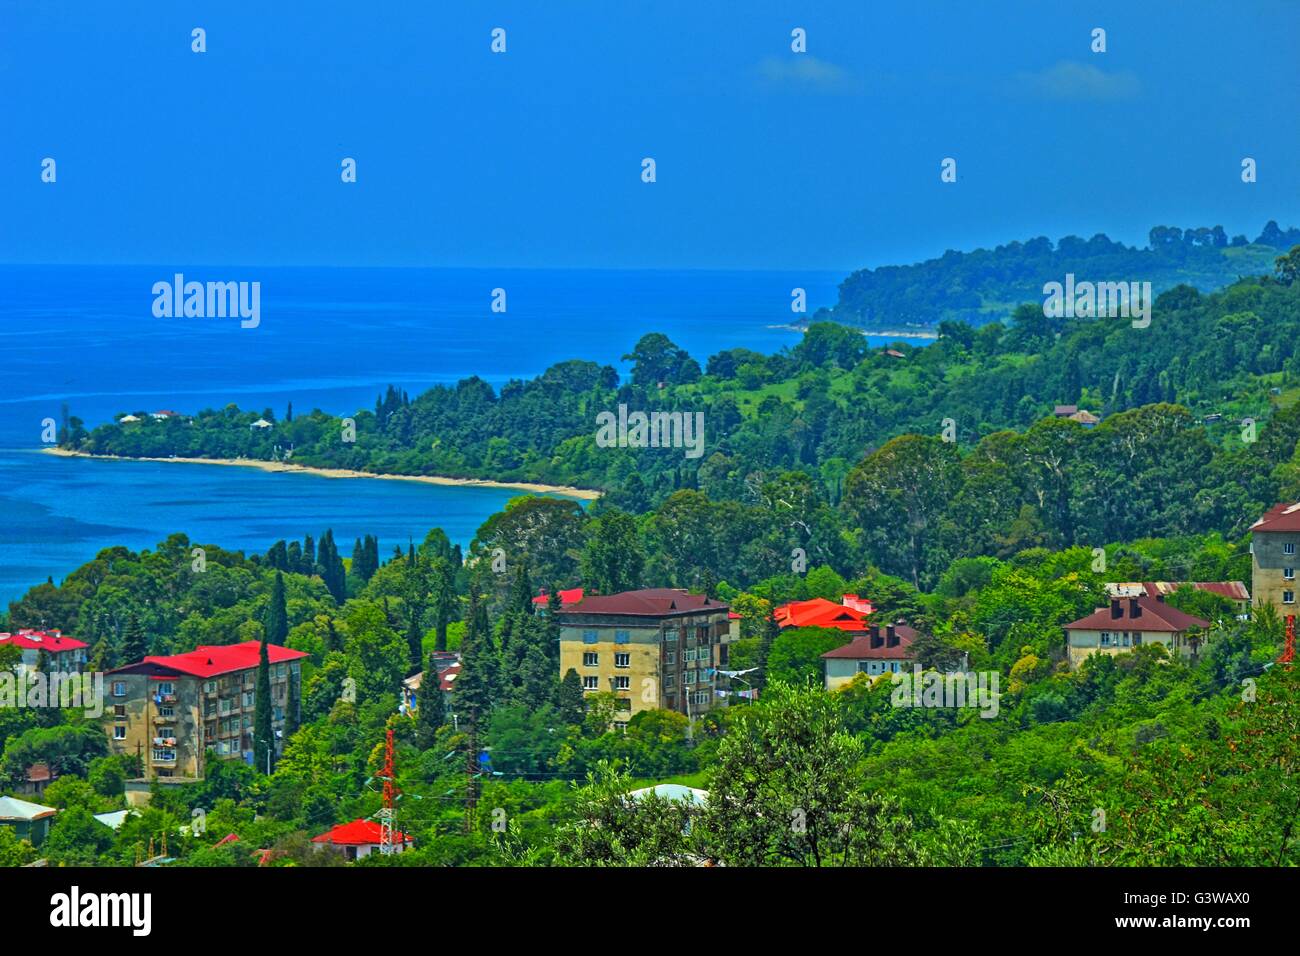 Panorama della costa del mare con piccola città balneare ed i contrafforti della dorsale montagnosa coperta da una fitta vegetazione Foto Stock